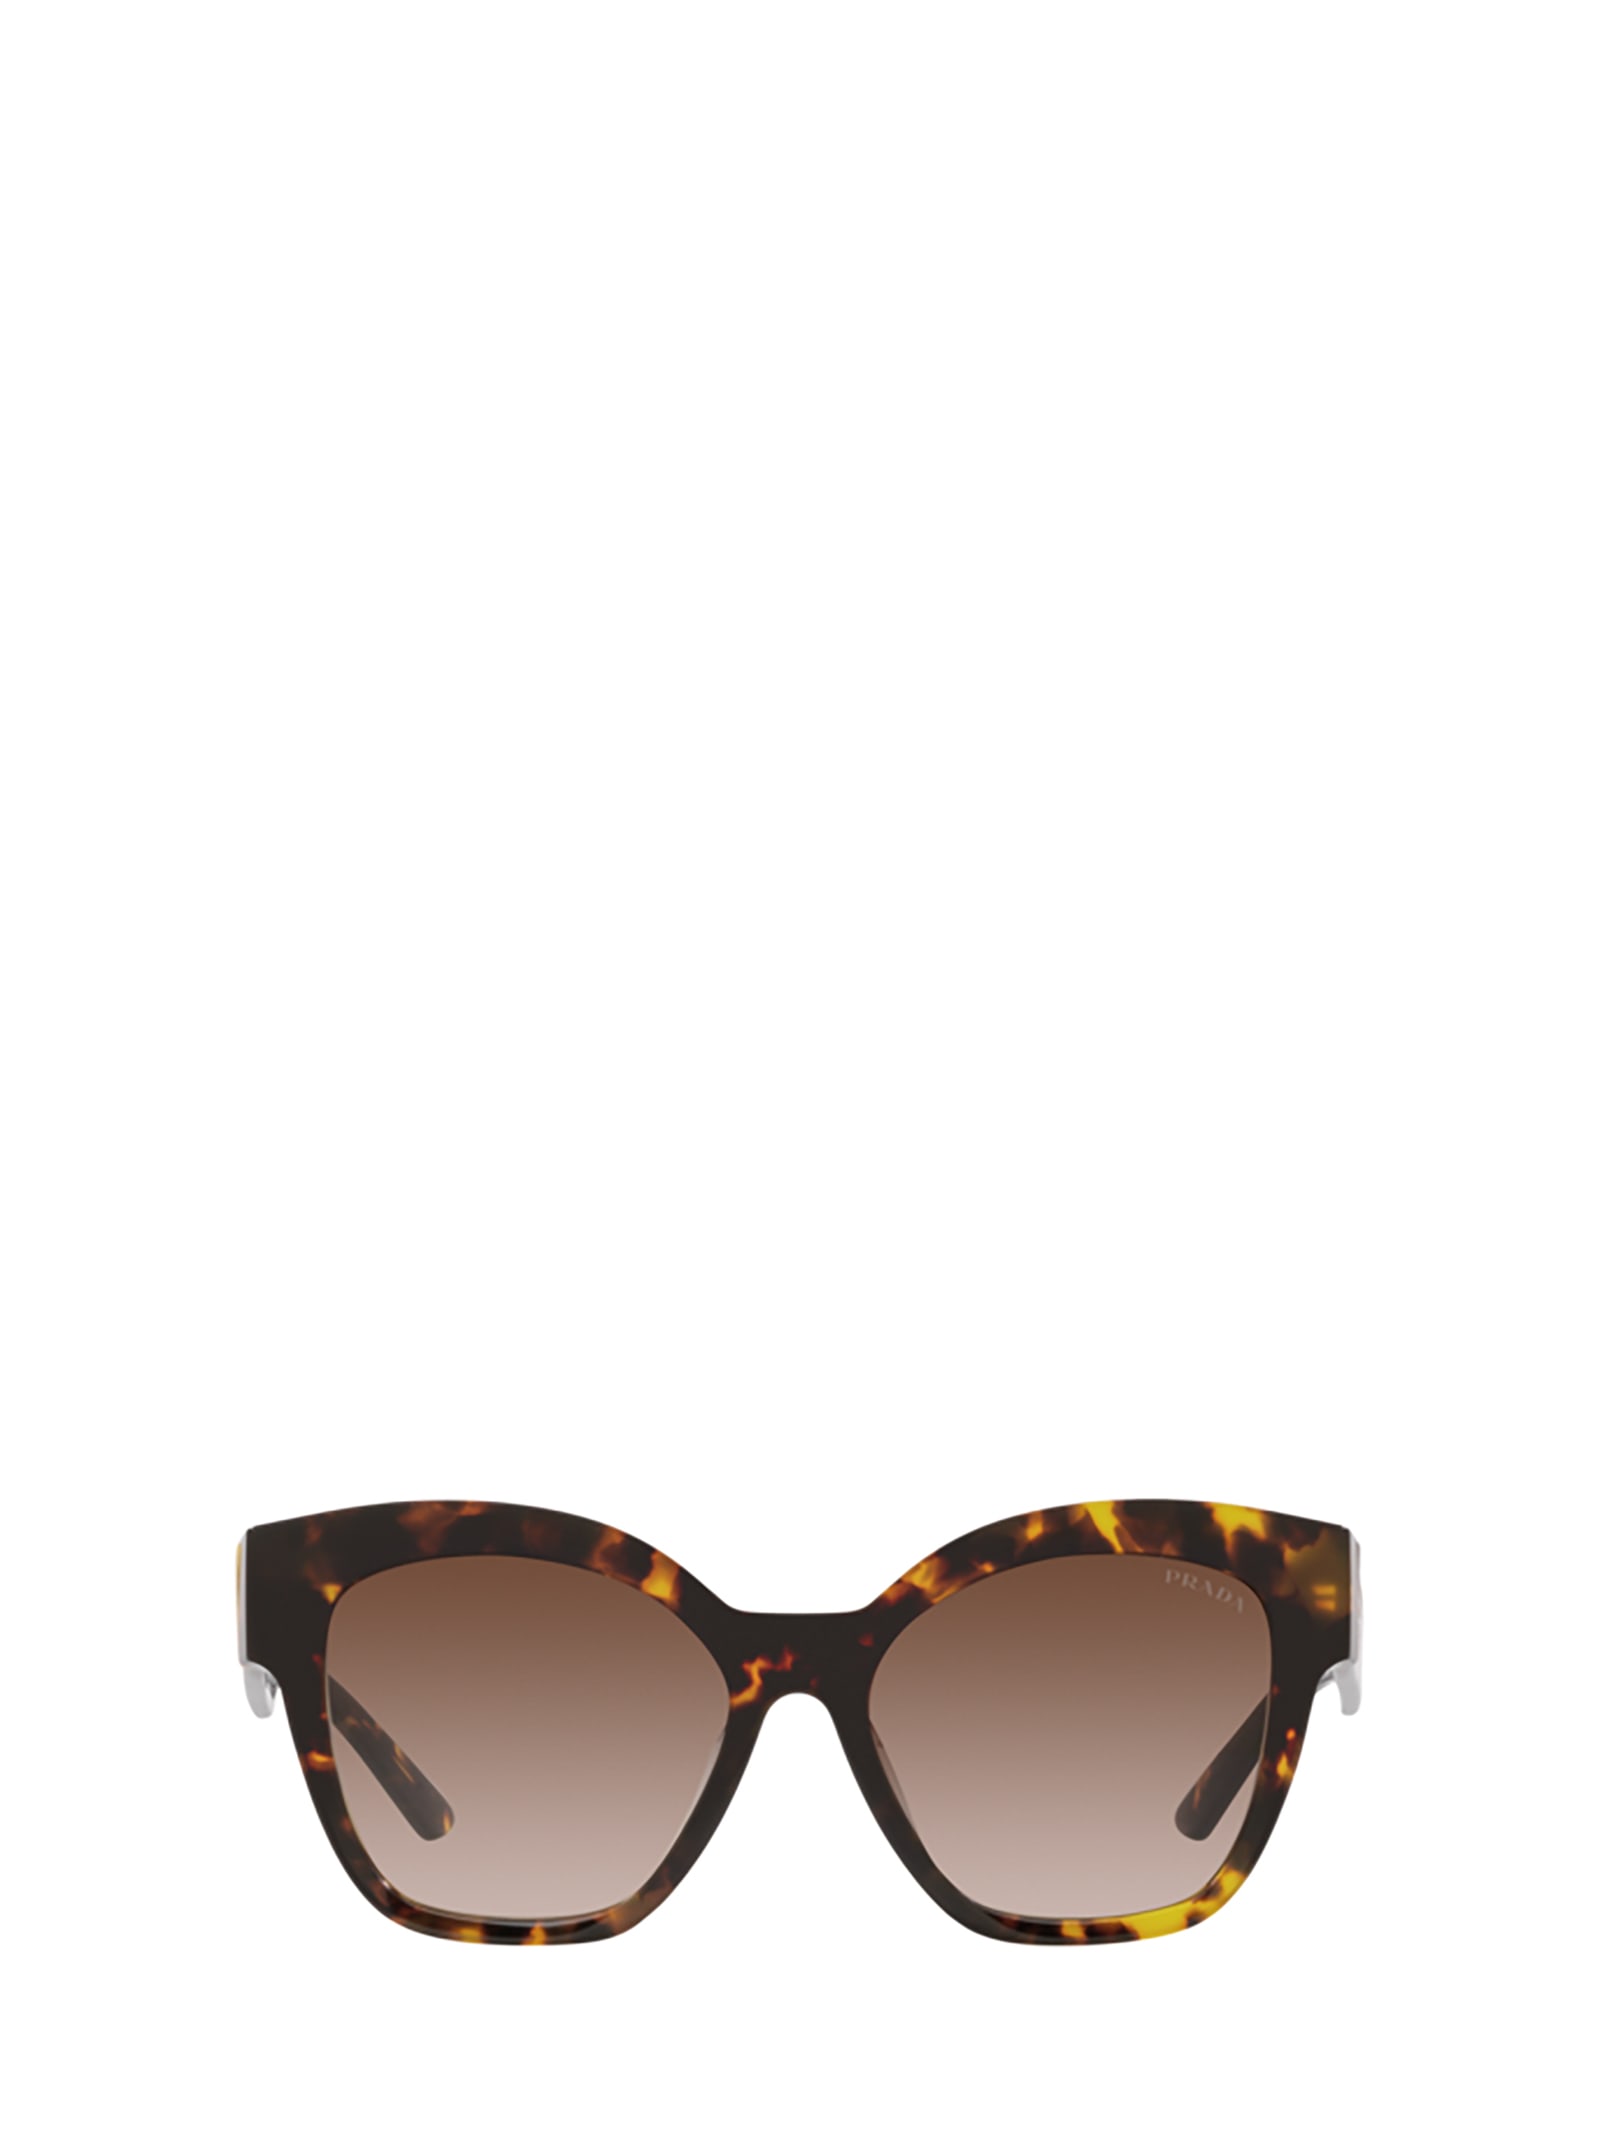 Prada Eyewear Pr 17zs Honey Tortoise Sunglasses